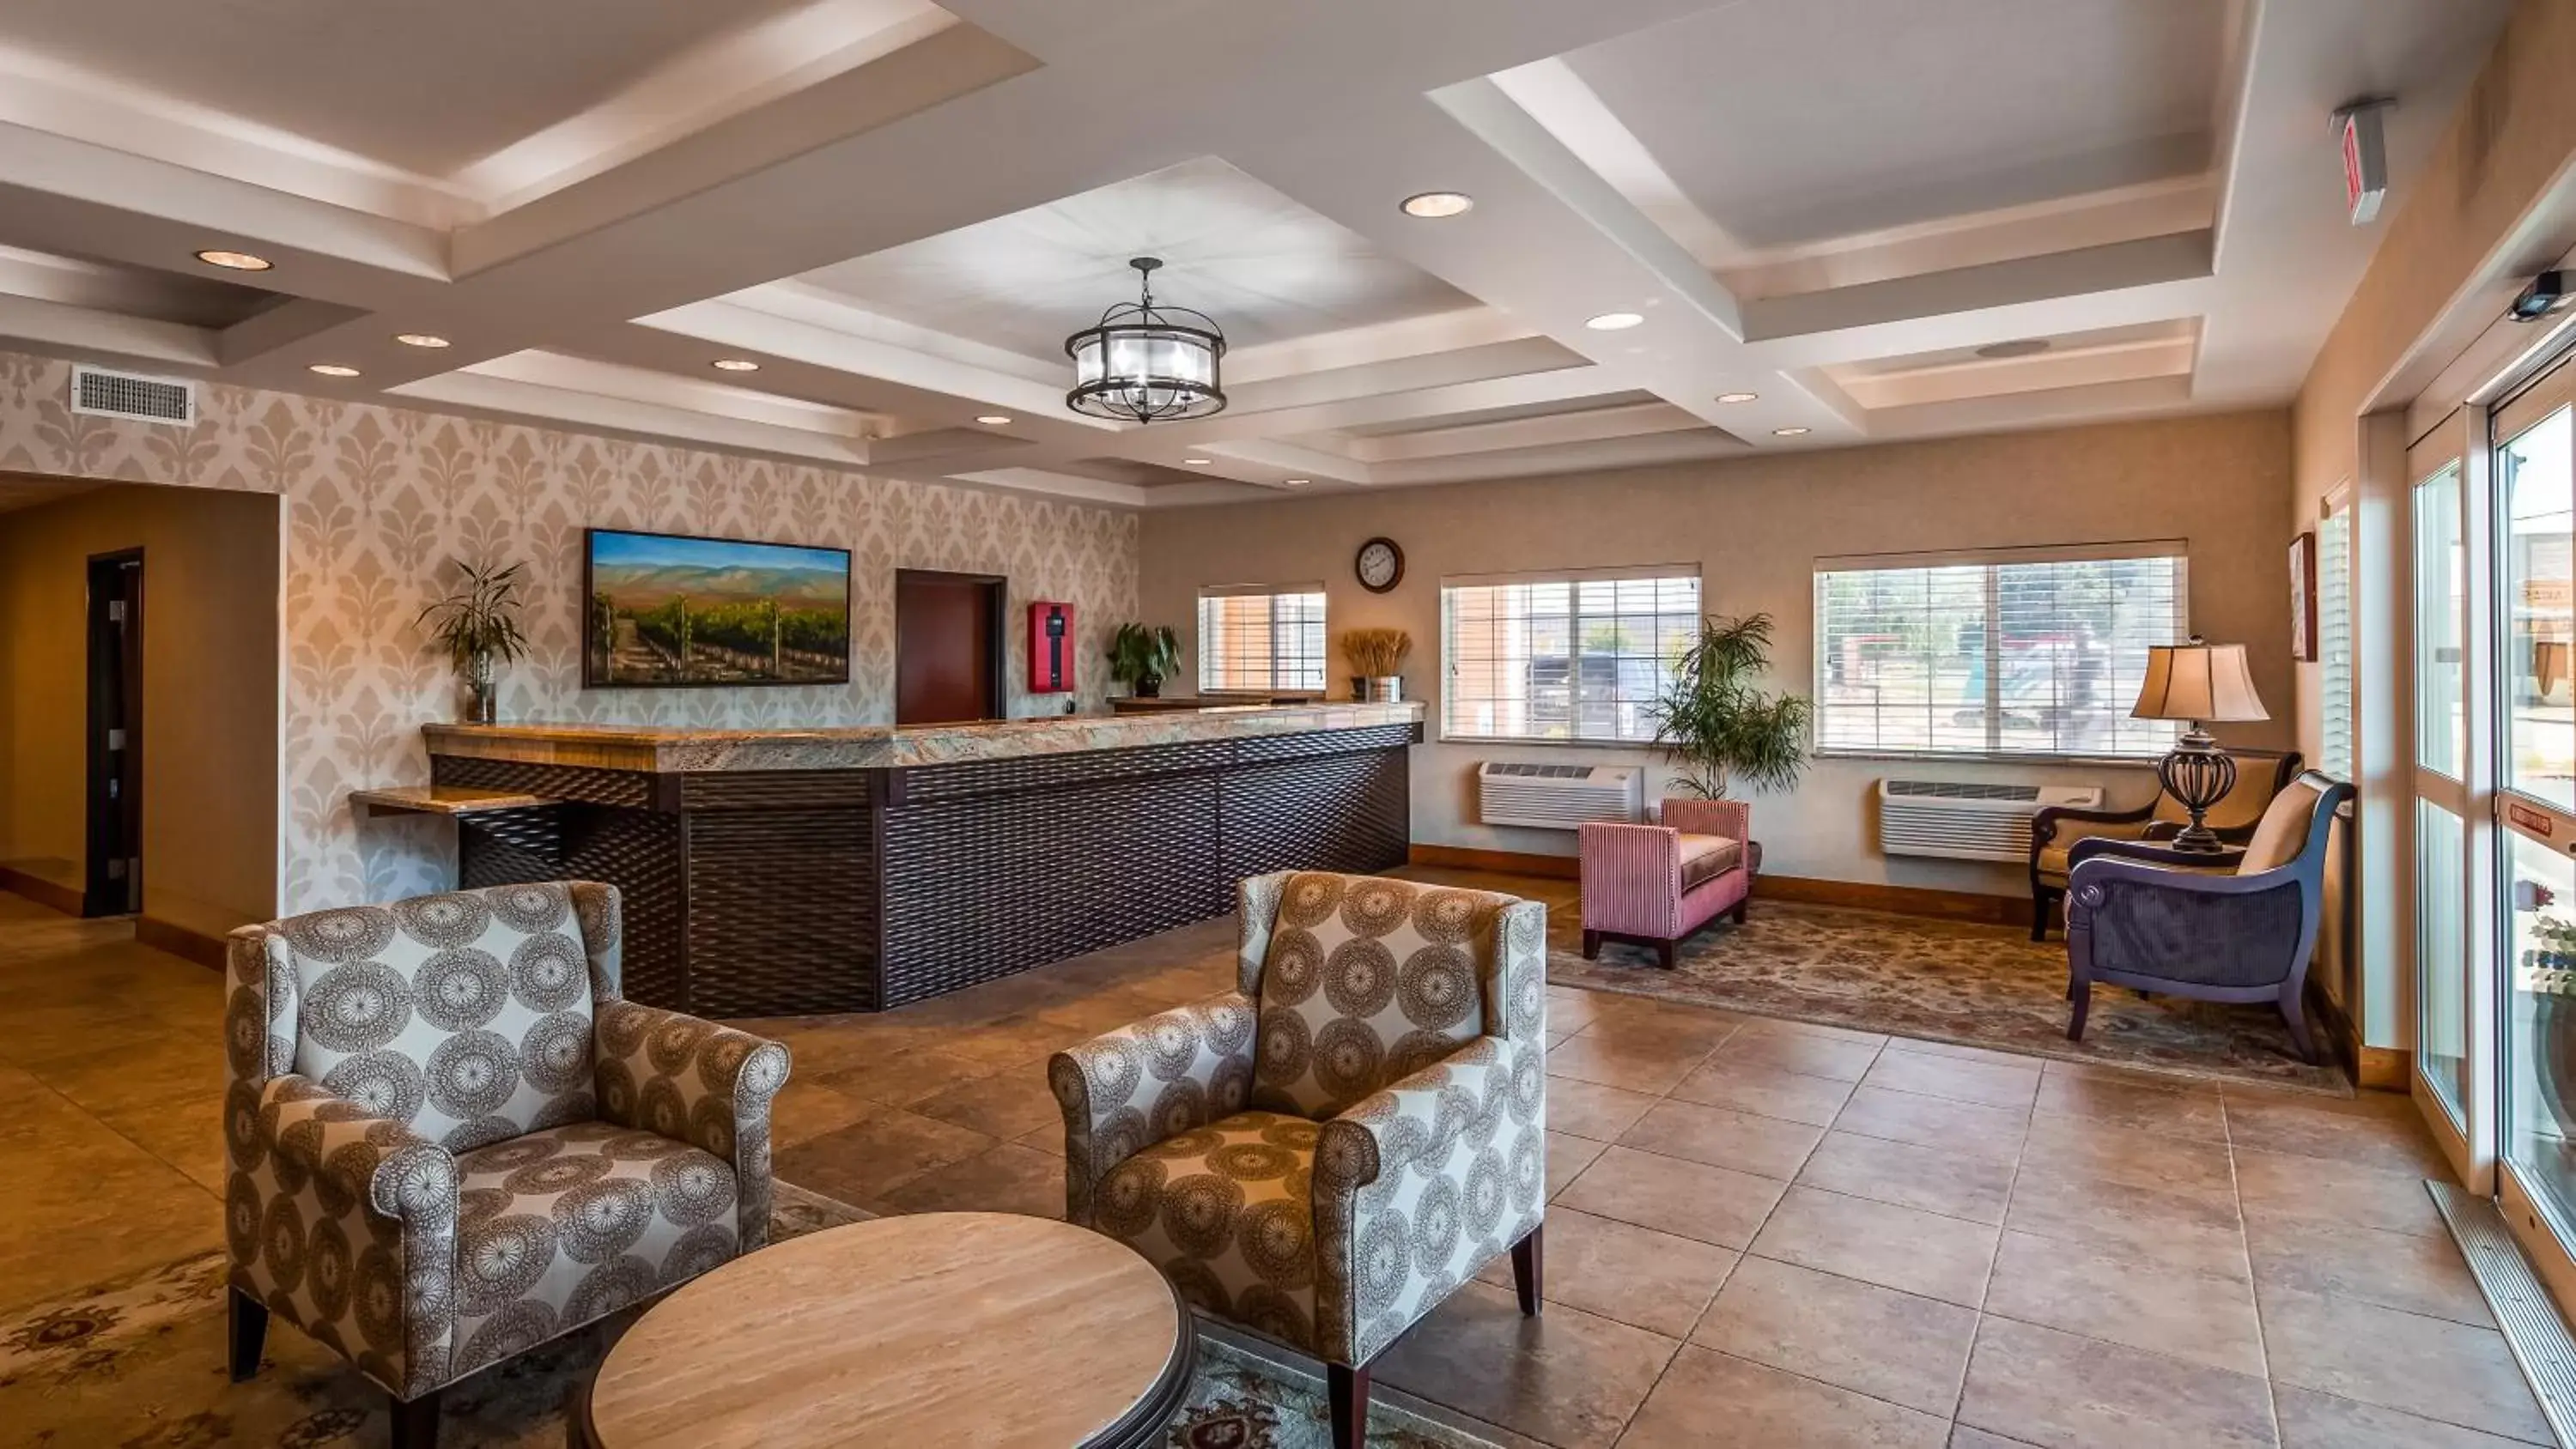 Lobby or reception, Lobby/Reception in Best Western PLUS Walla Walla Suites Inn